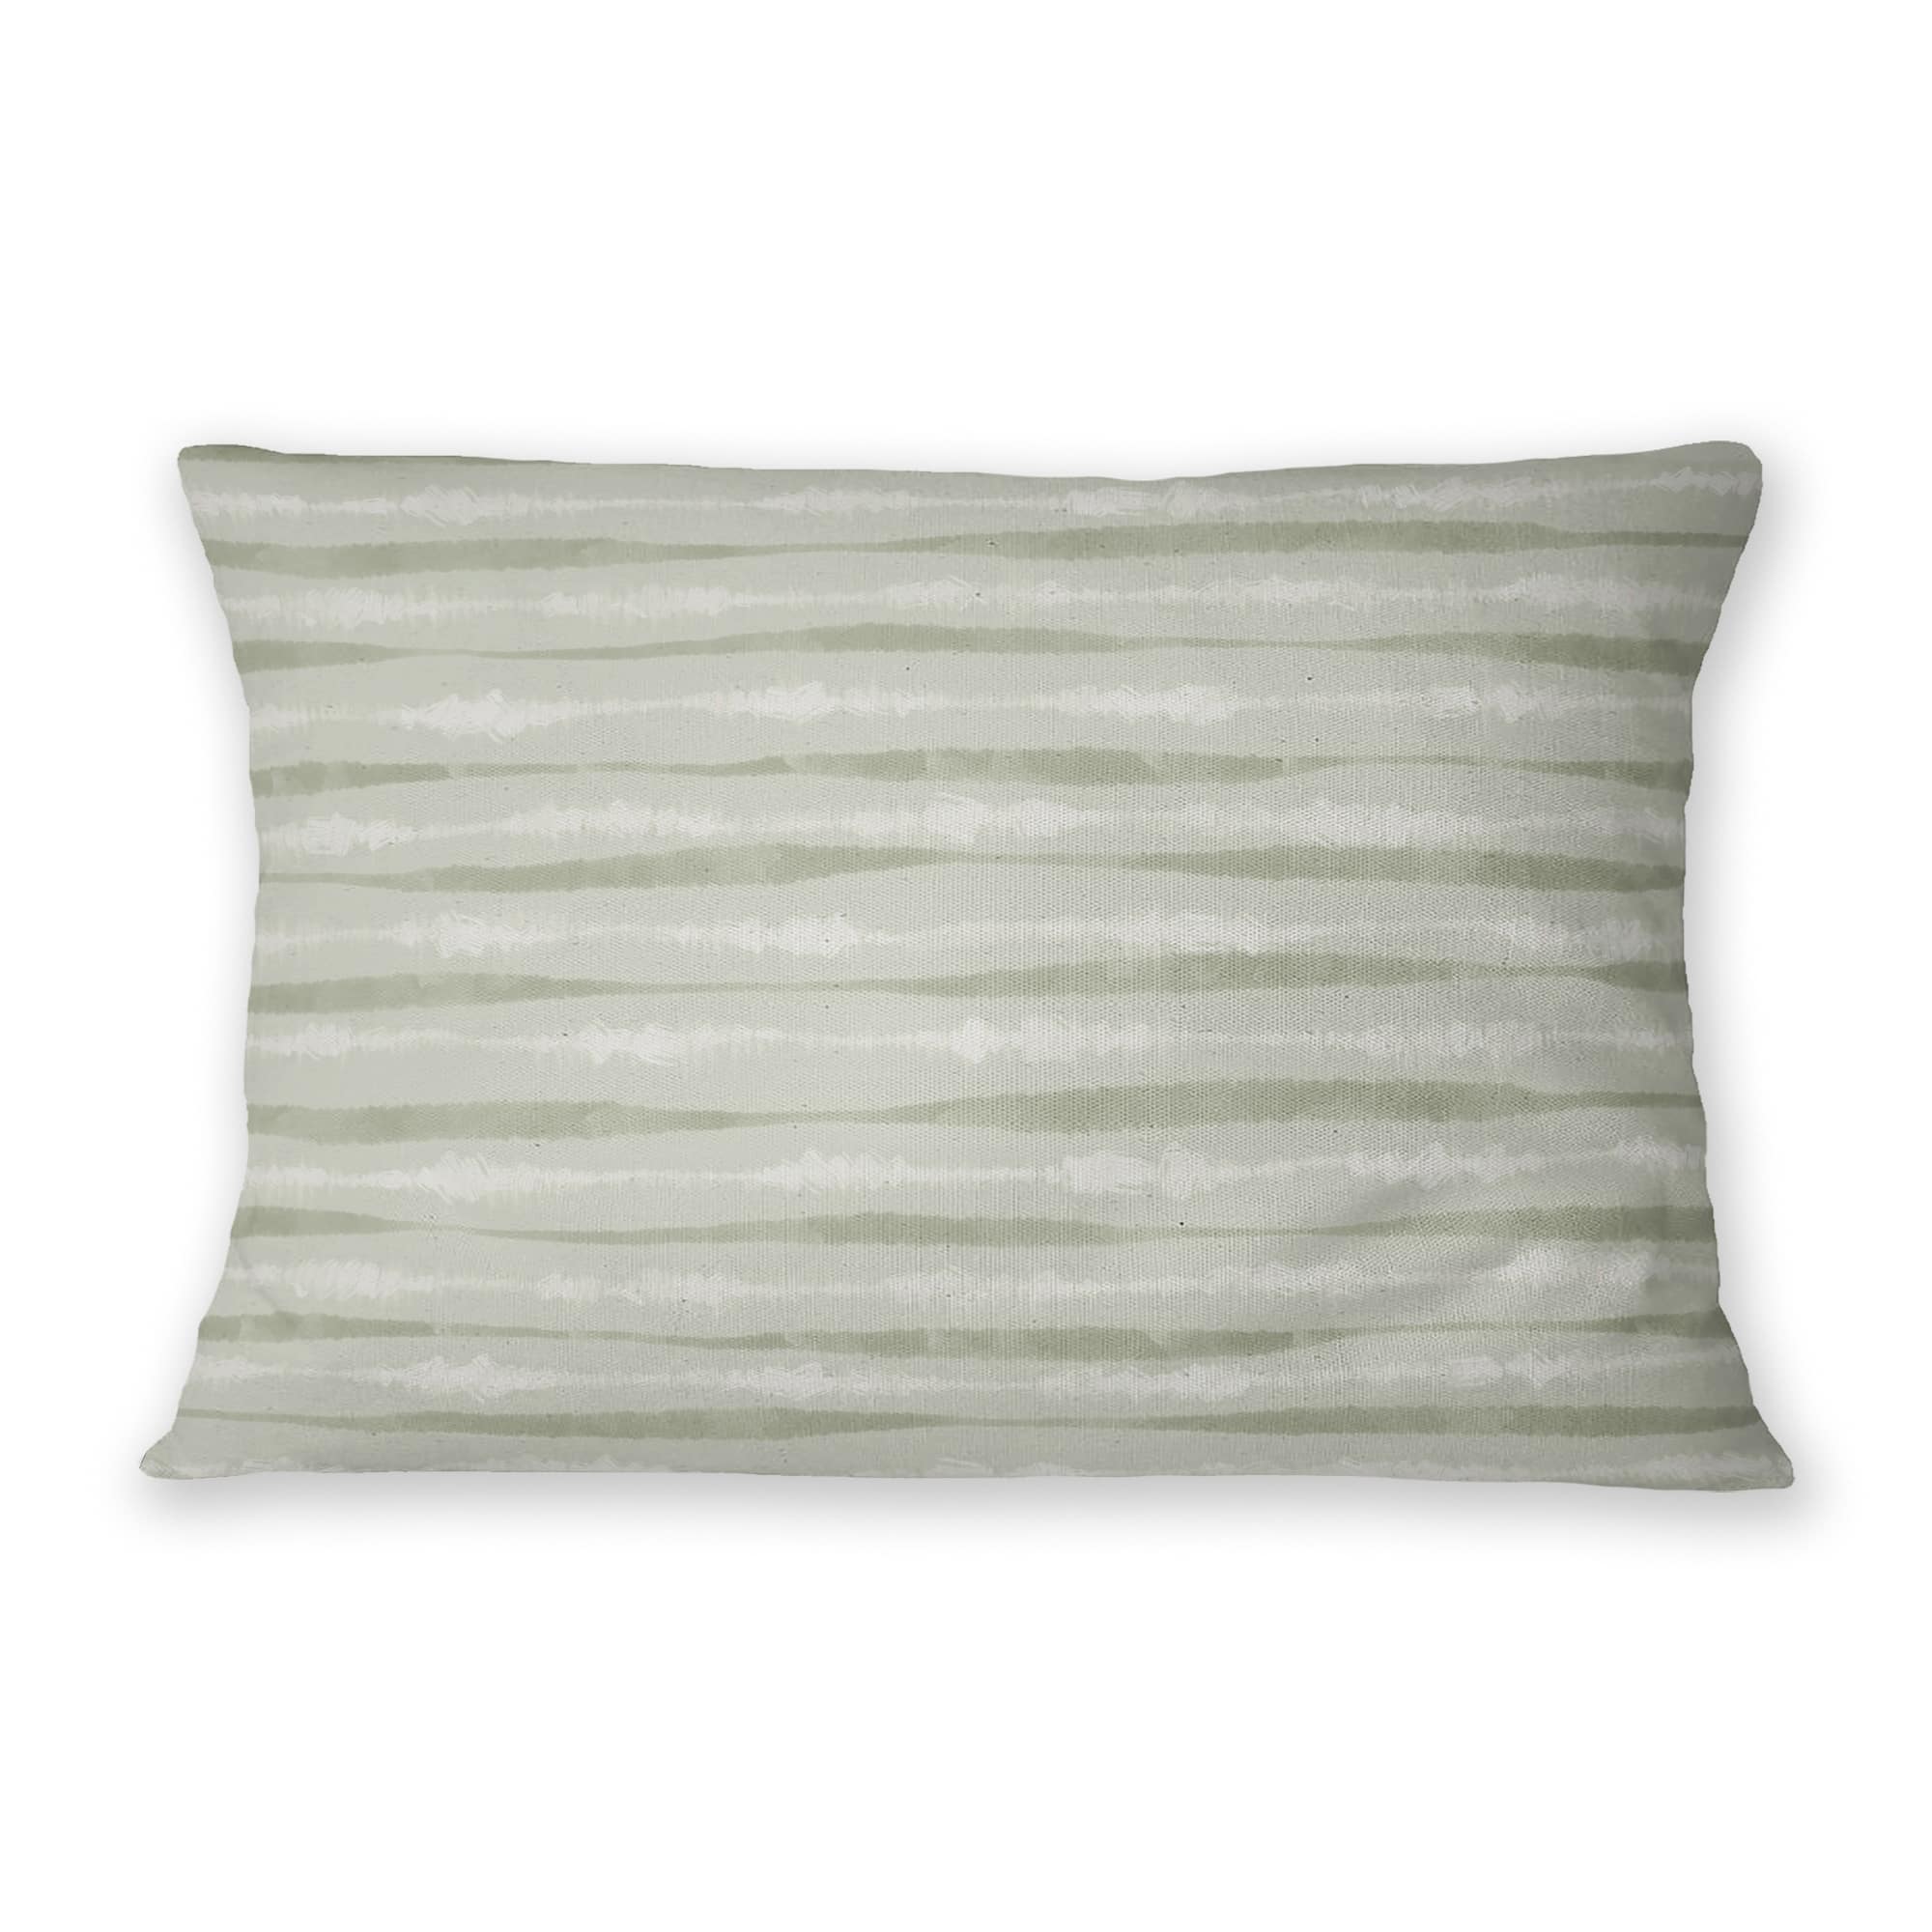 TIE-DYE STRIPE SAGE Lumbar Pillow By Jenny Lund - Bed Bath & Beyond ...